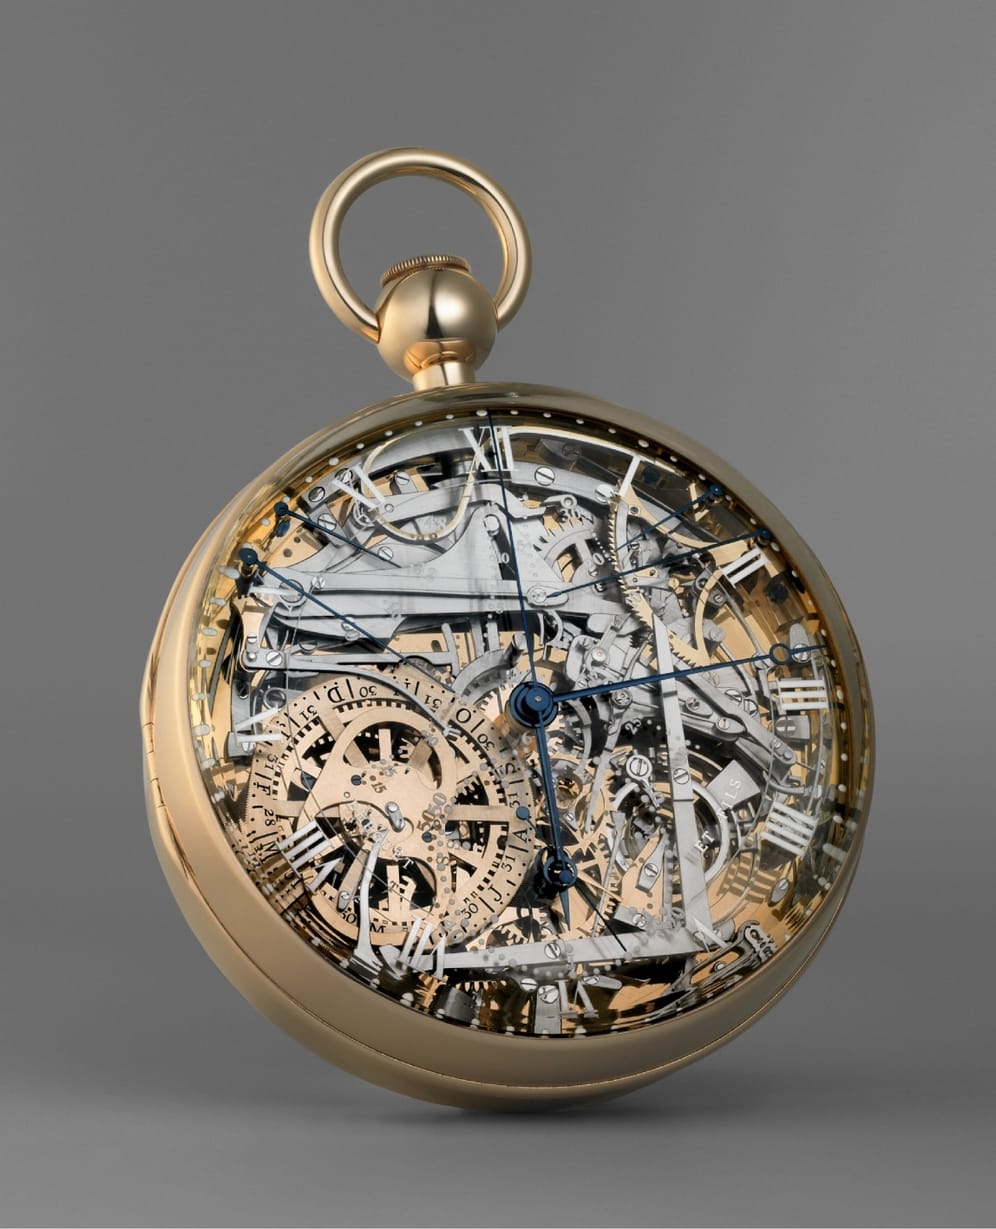 Außerhalb der Konkurrenz bei den teuersten Uhren der Welt läuft die Marie Antoinette von Breguet. Die Uhr für die französische Königin Marie Antoinette wurde 1783 bestellt. Doch erst 44 Jahre stellte die Manufaktur die Taschenuhr mit ihren zahlreichen Komplikationen auch fertig. Eine Replika von 2008 (im Bild) ist heute wohl mindestens 10 Millionen Euro wert.